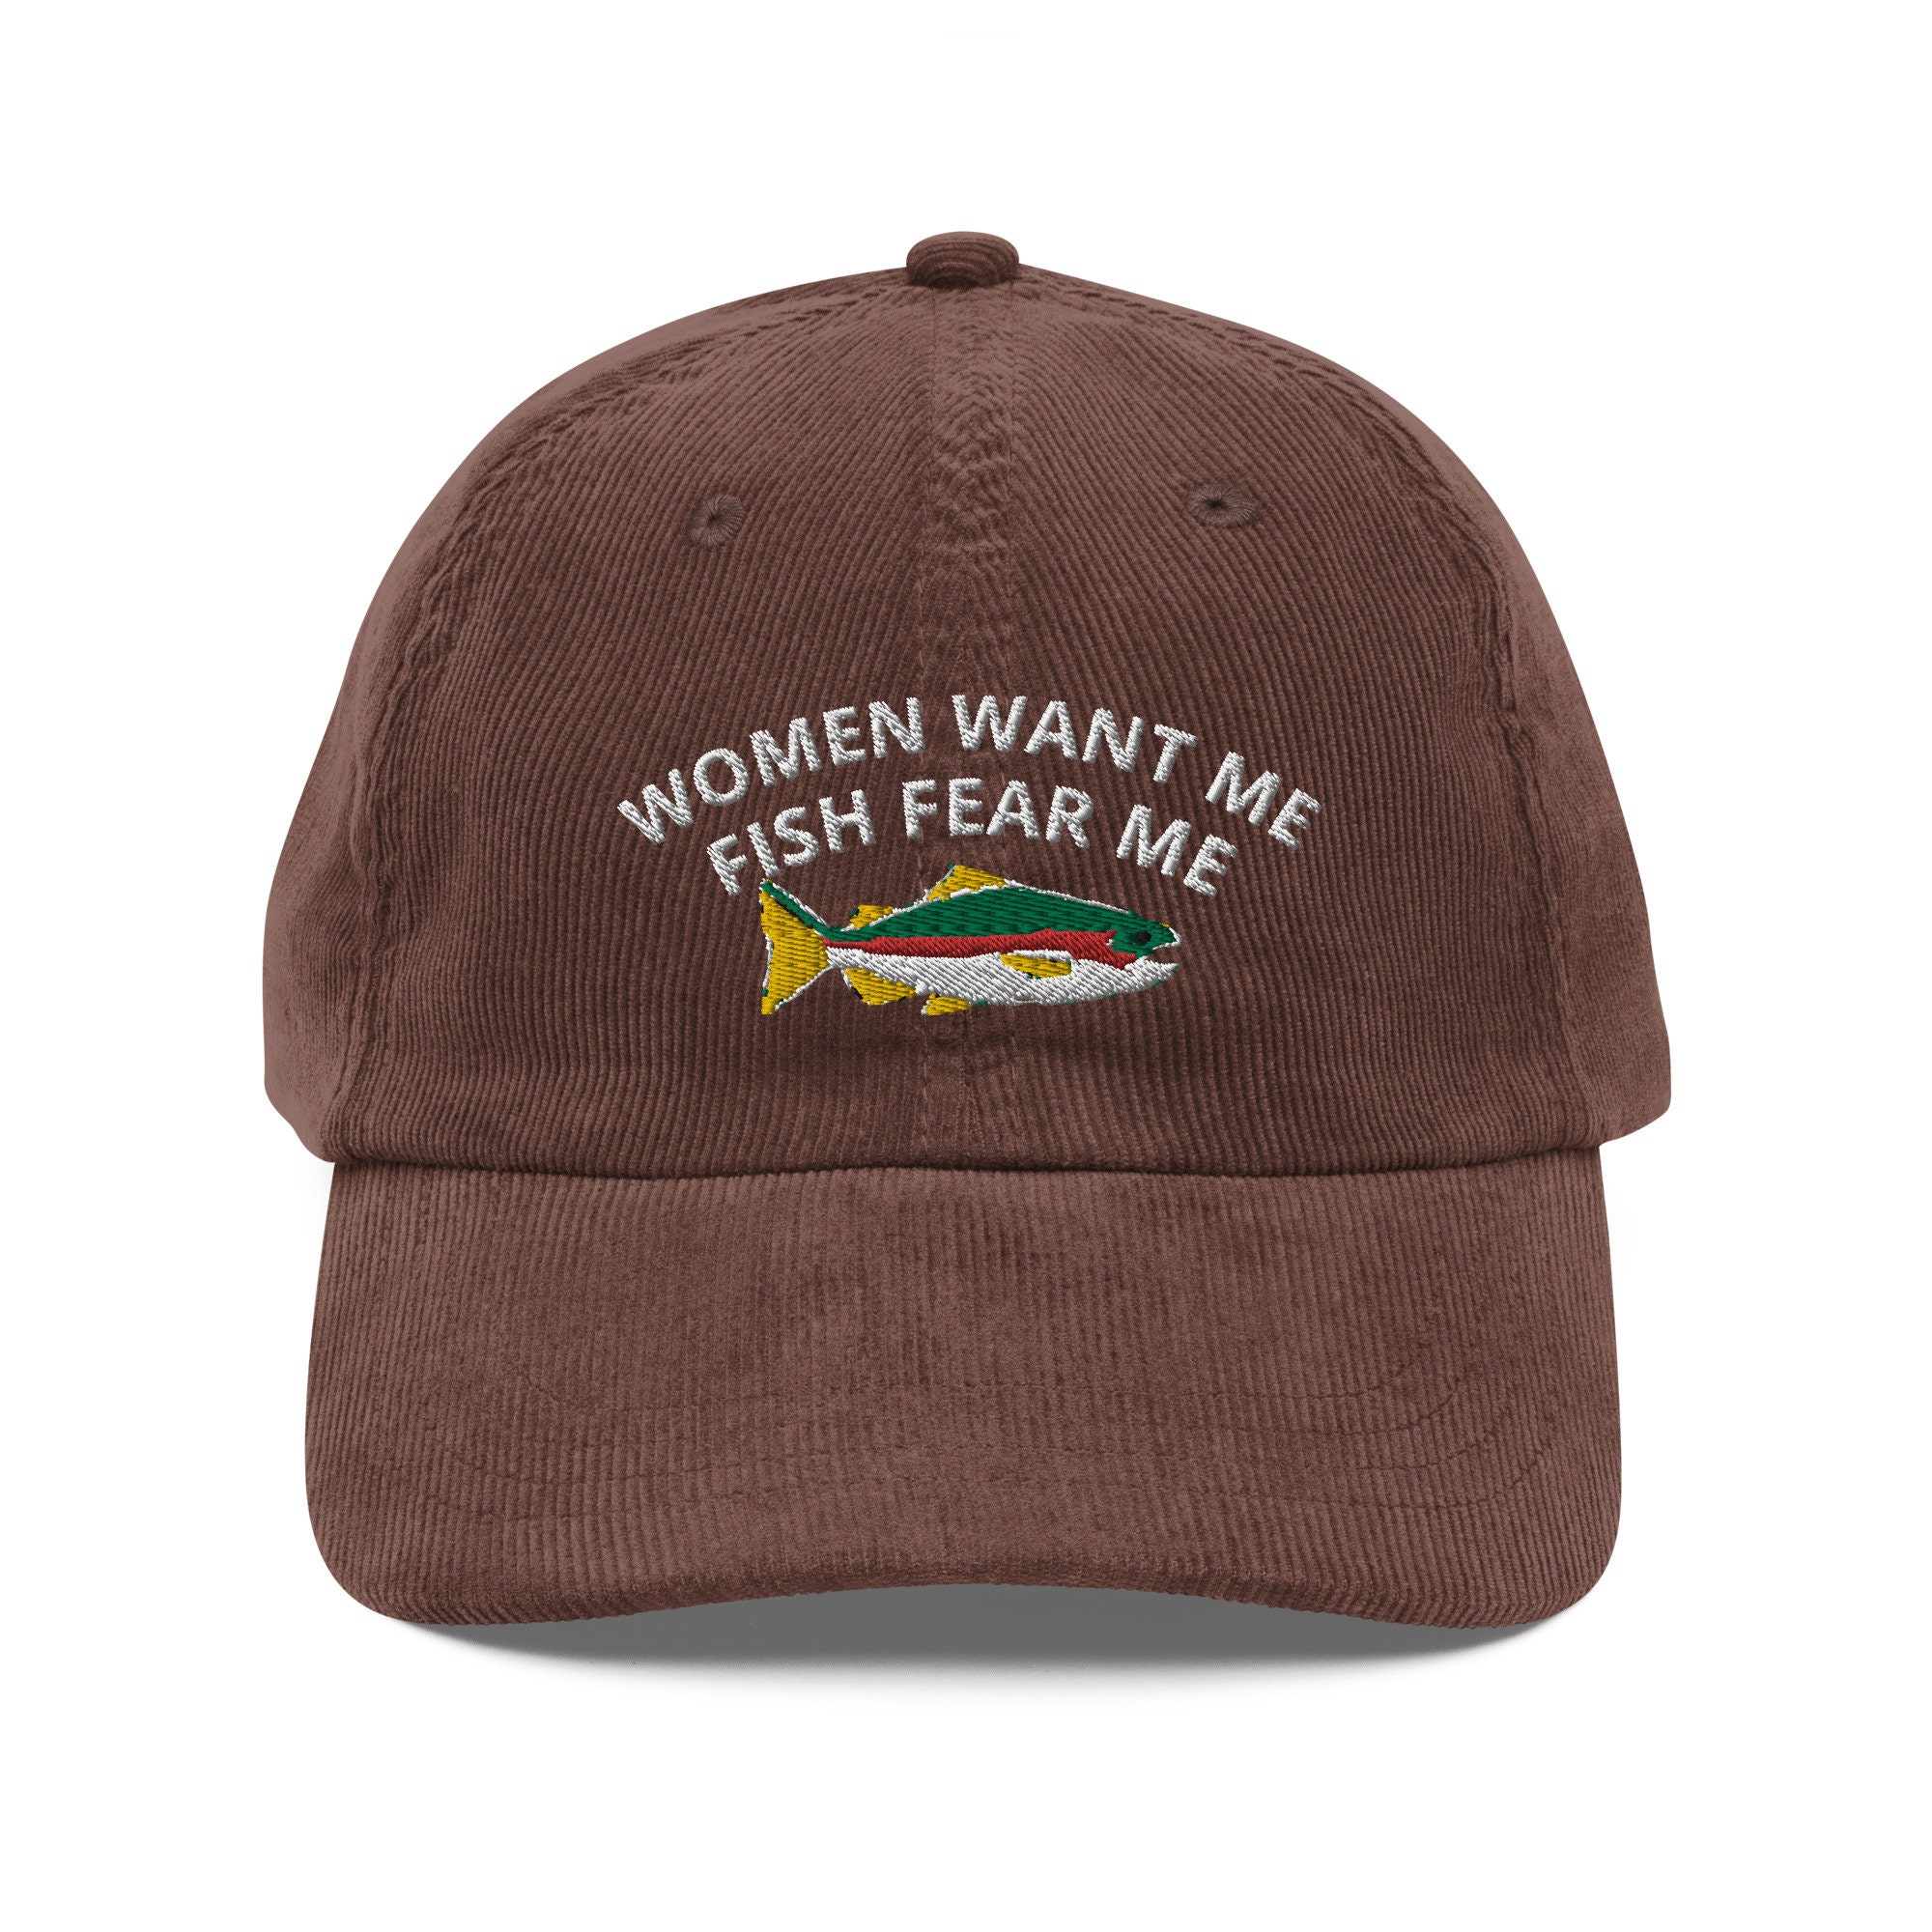  Fish Fear Me Golf Hat Kawaii Hat Pigment Black Custom